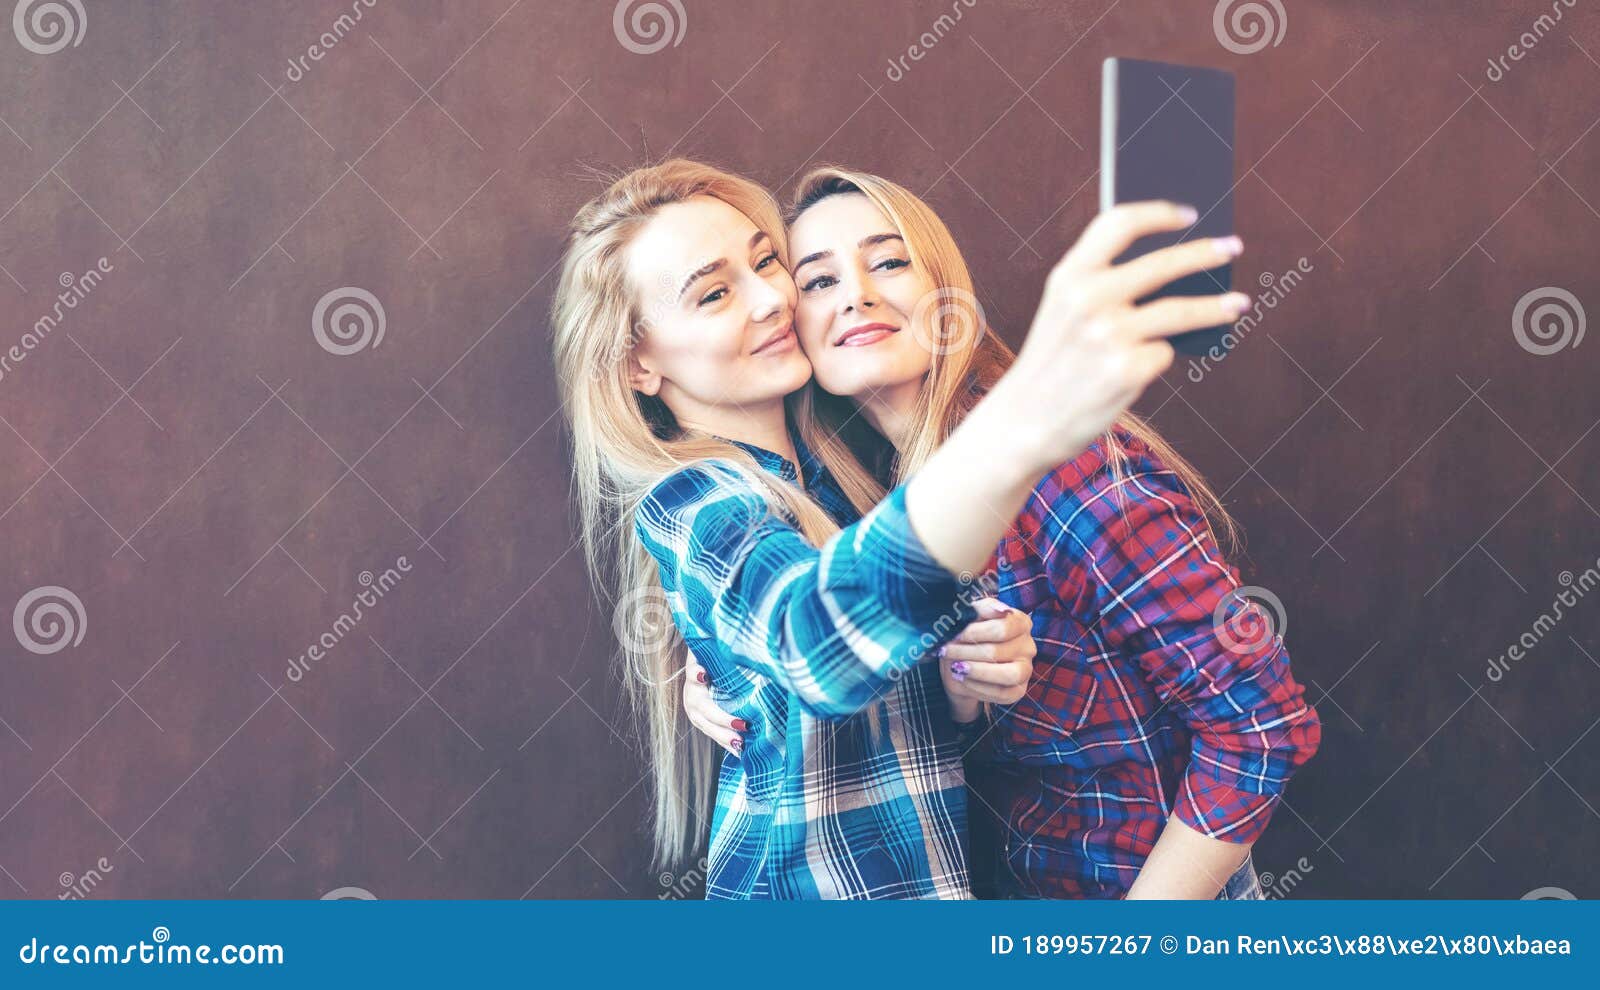 lesbian women selfie